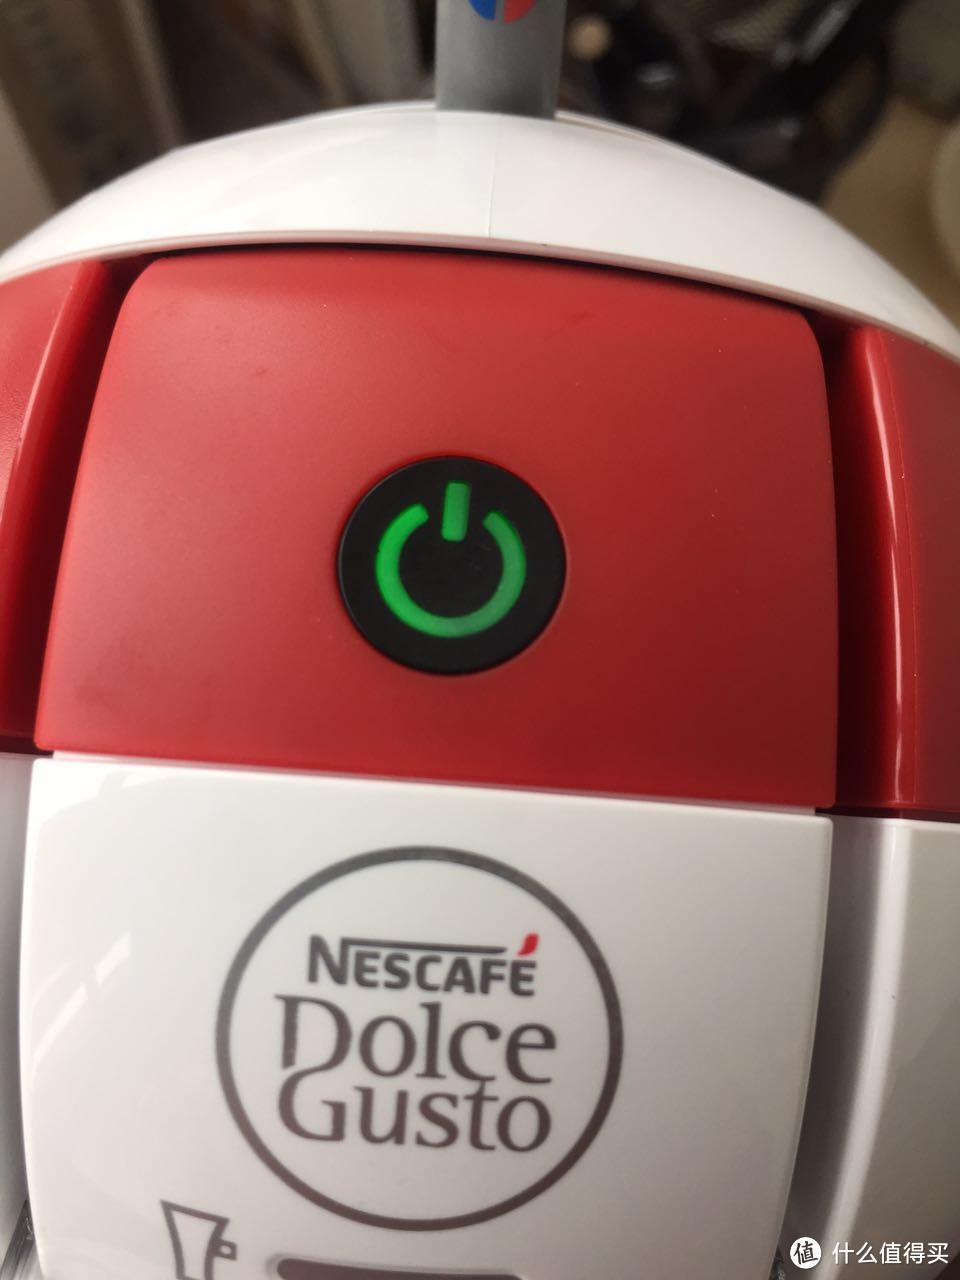 入门级别的胶囊咖啡机 Dolce Gusto EDG305 入手尝鲜